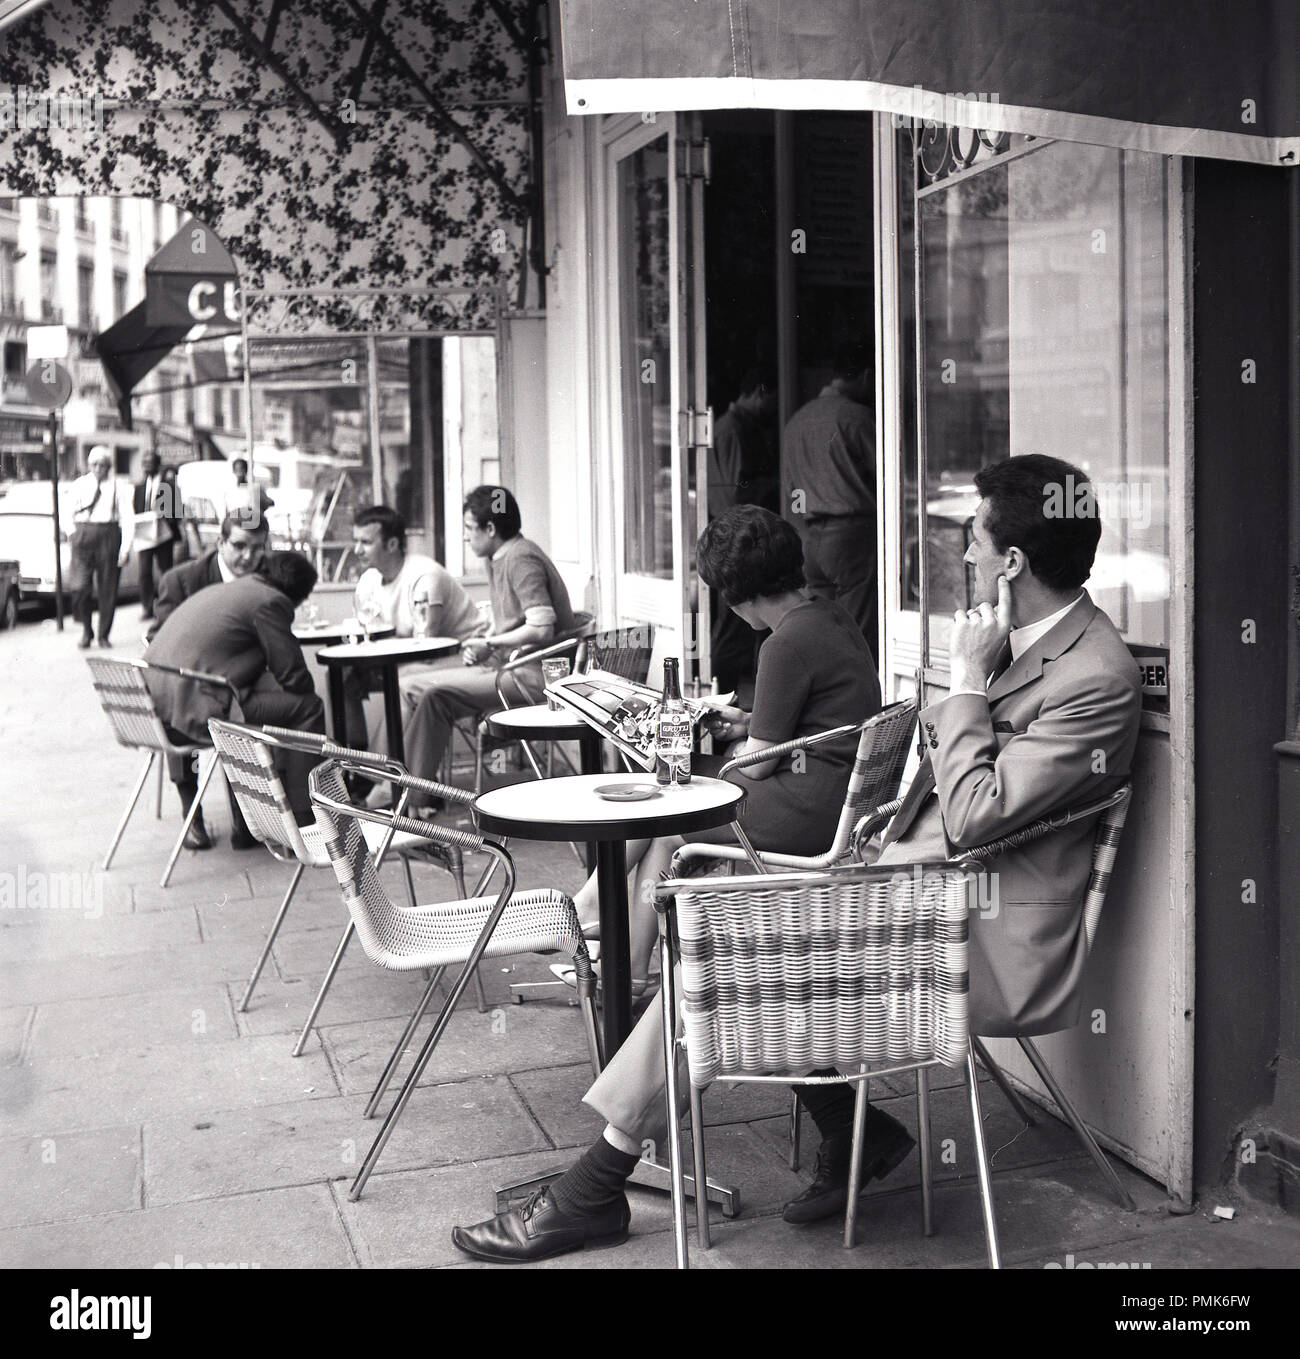 Années 1950, les Parisiens s'asseoir à des tables à l'extérieur d'un café sur le trottoir, Paris, France. Banque D'Images